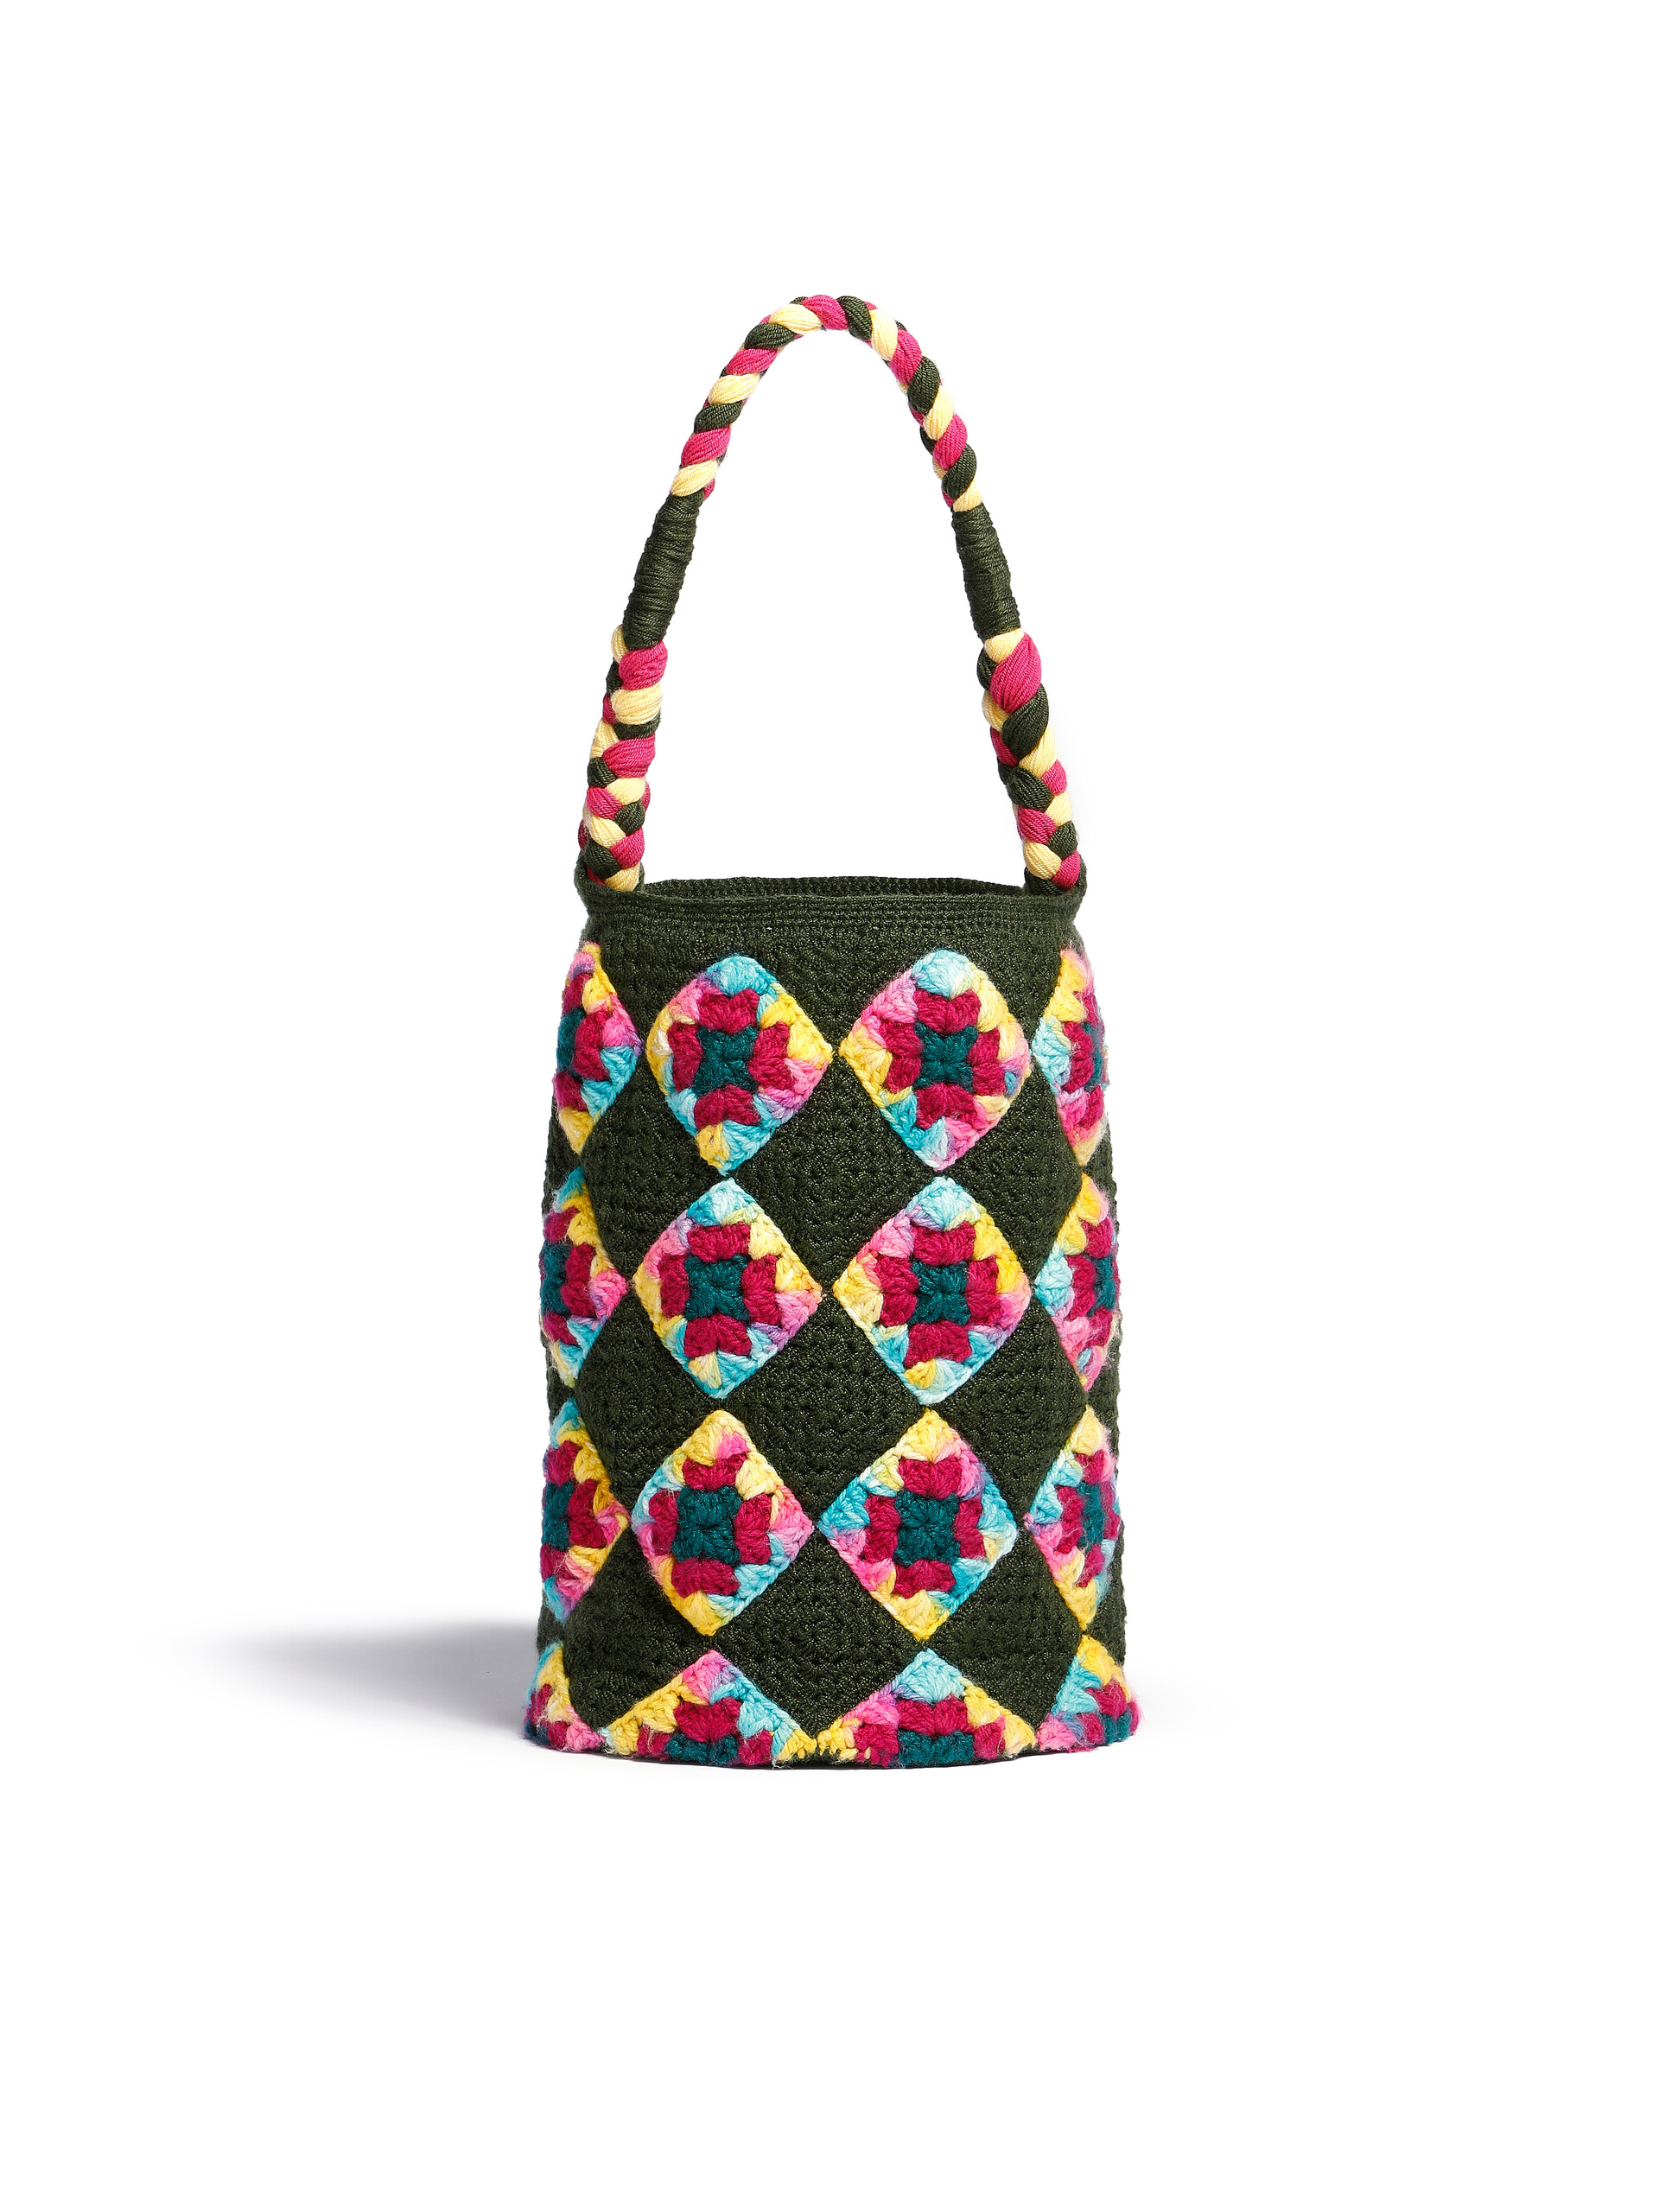 MARNI MARKET HAMMOCK BAG in multicolor crochet